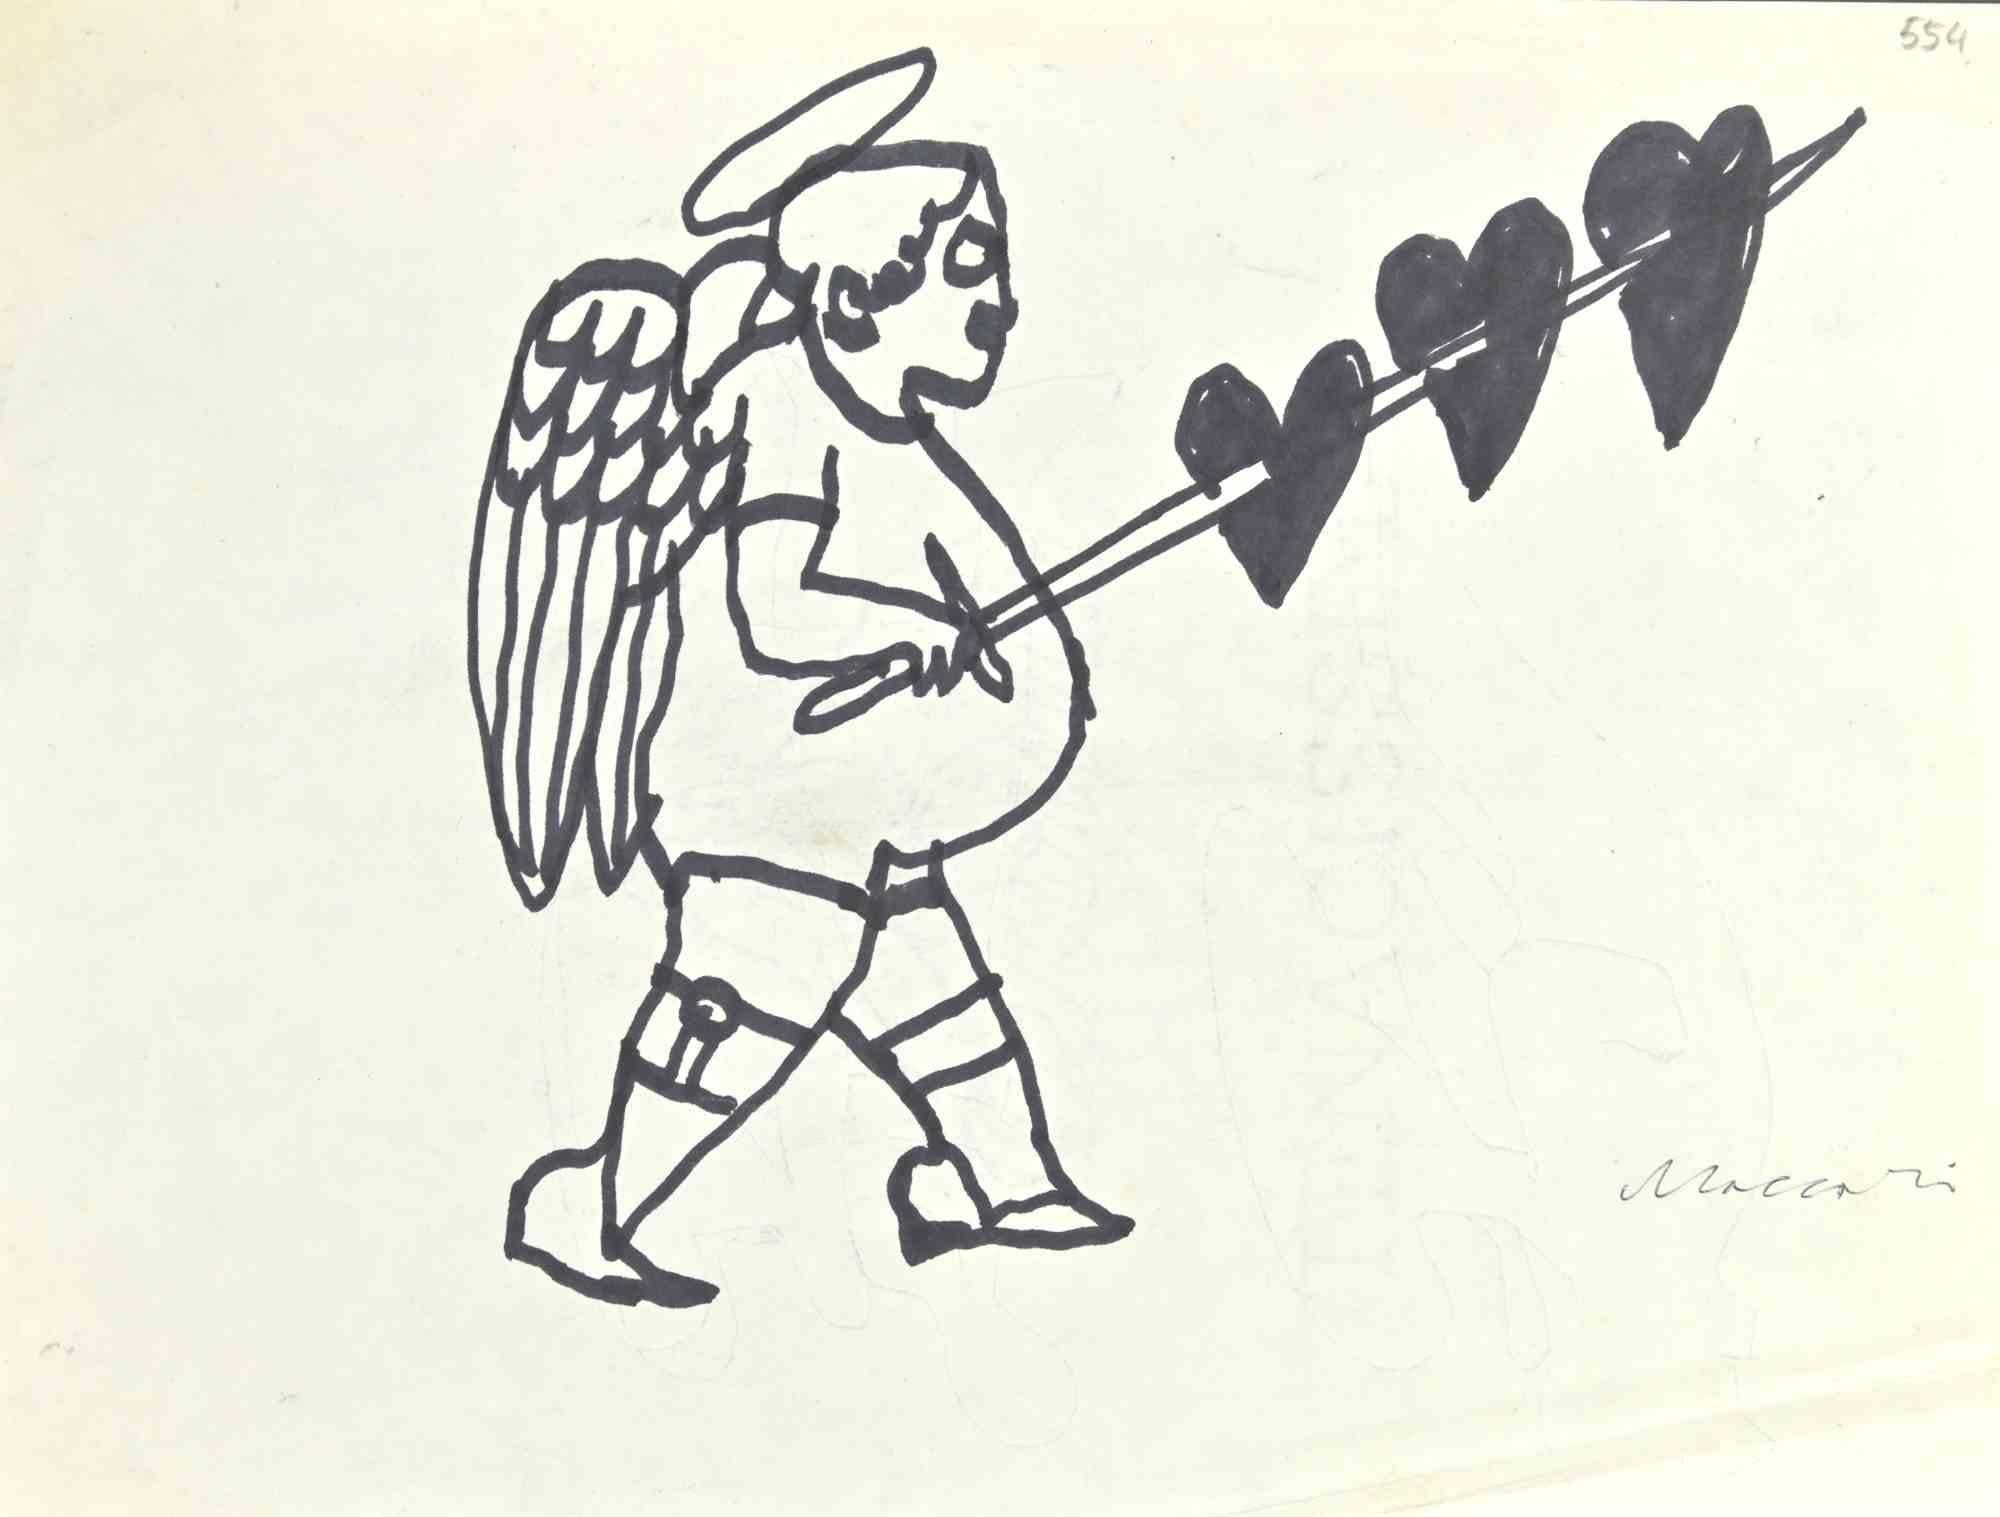 Angel of Hearts est un dessin à l'aquarelle réalisé par Mino Maccari  (1924-1989) dans les années 1960.

Signé à la main en bas.

Bon état, avec une légère pliure en bas à droite.

Mino Maccari (Sienne, 1924-Rome, 16 juin 1989) est un écrivain,